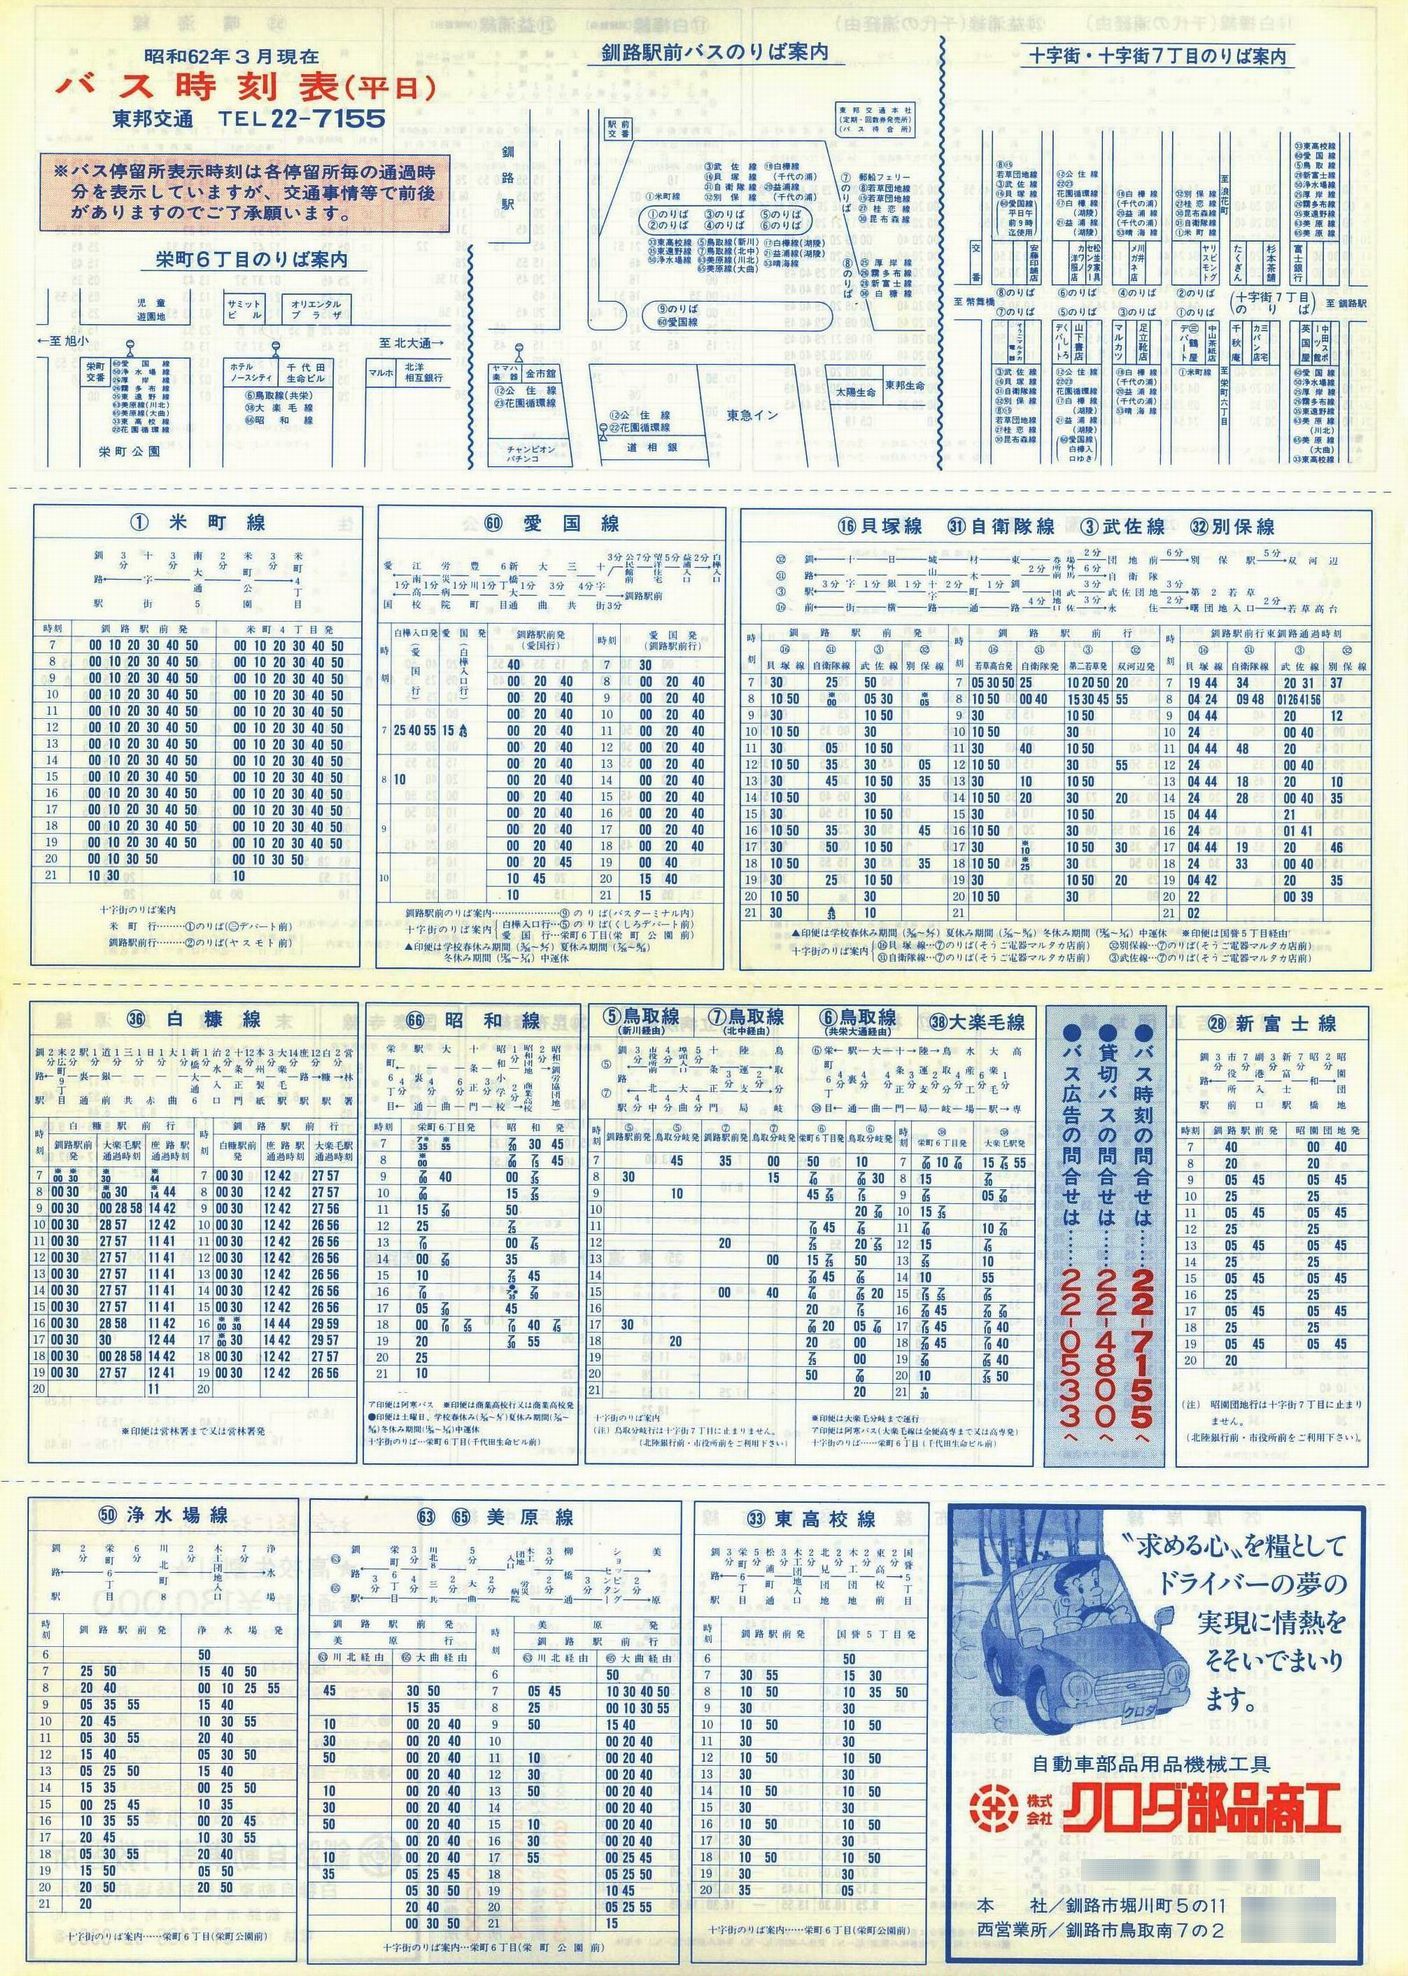 1987-03現在_東邦交通_平日時刻表表面